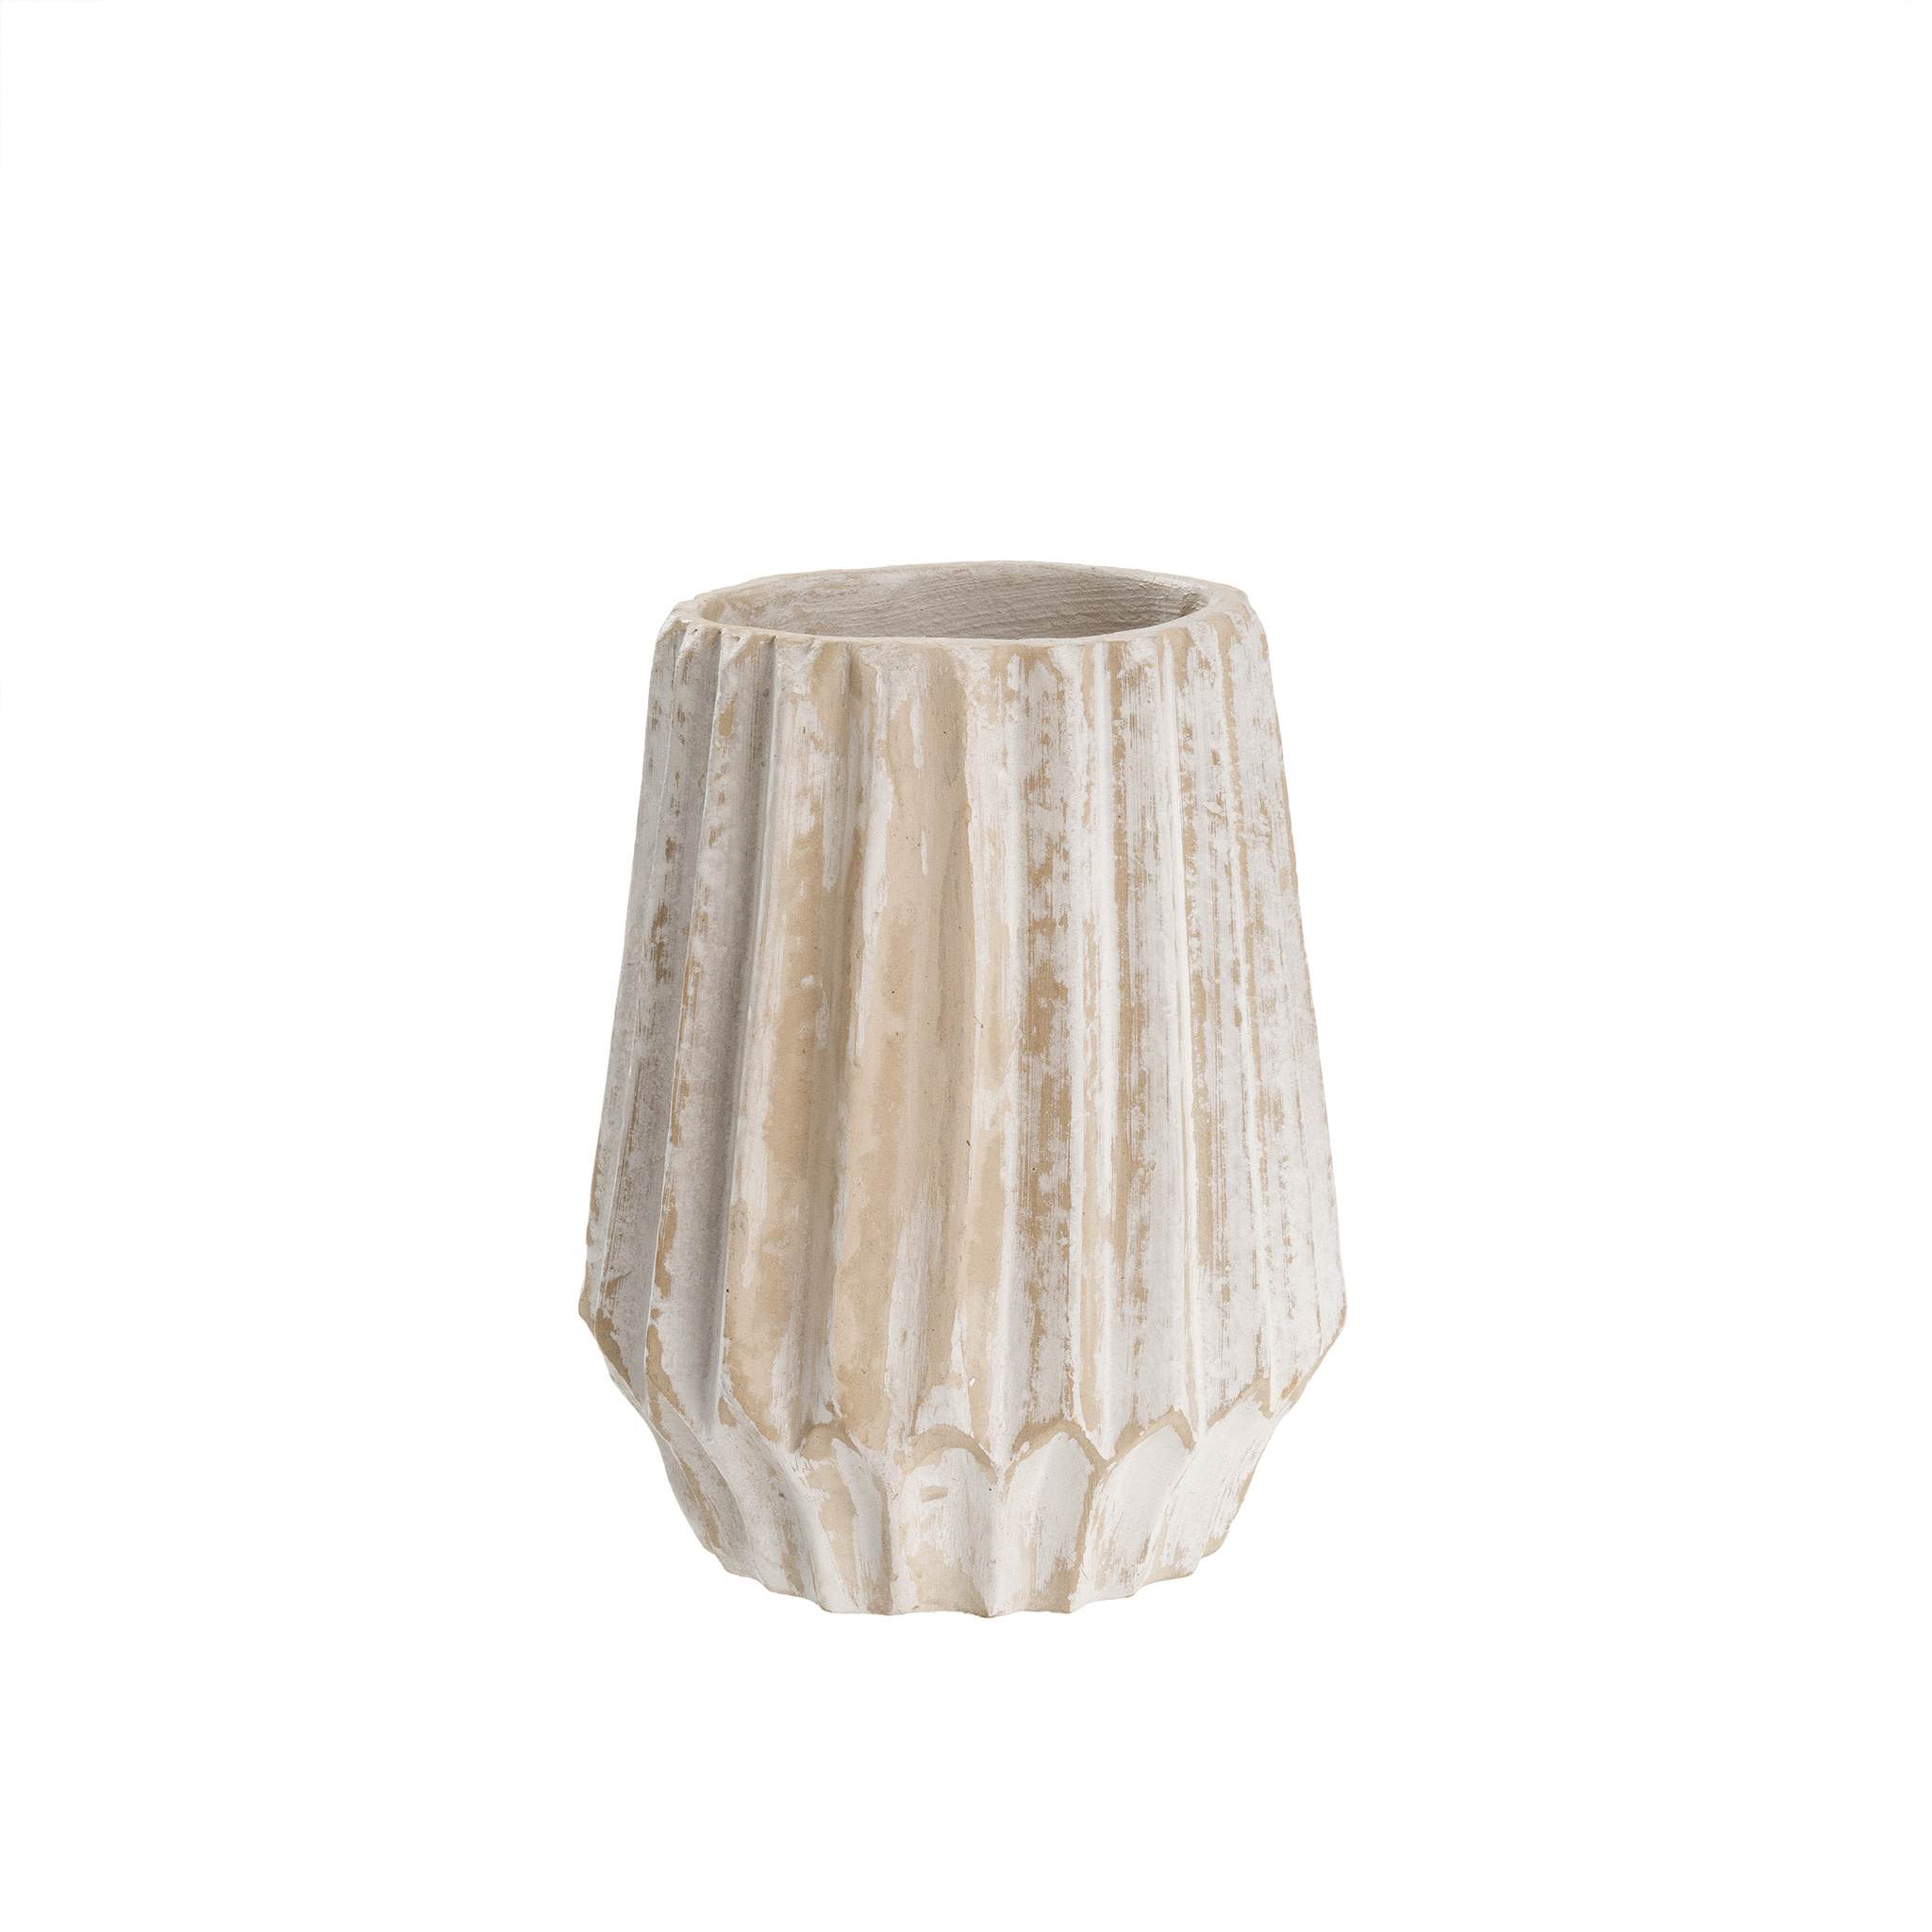 Athens Paper Mache Vase, 6x7"